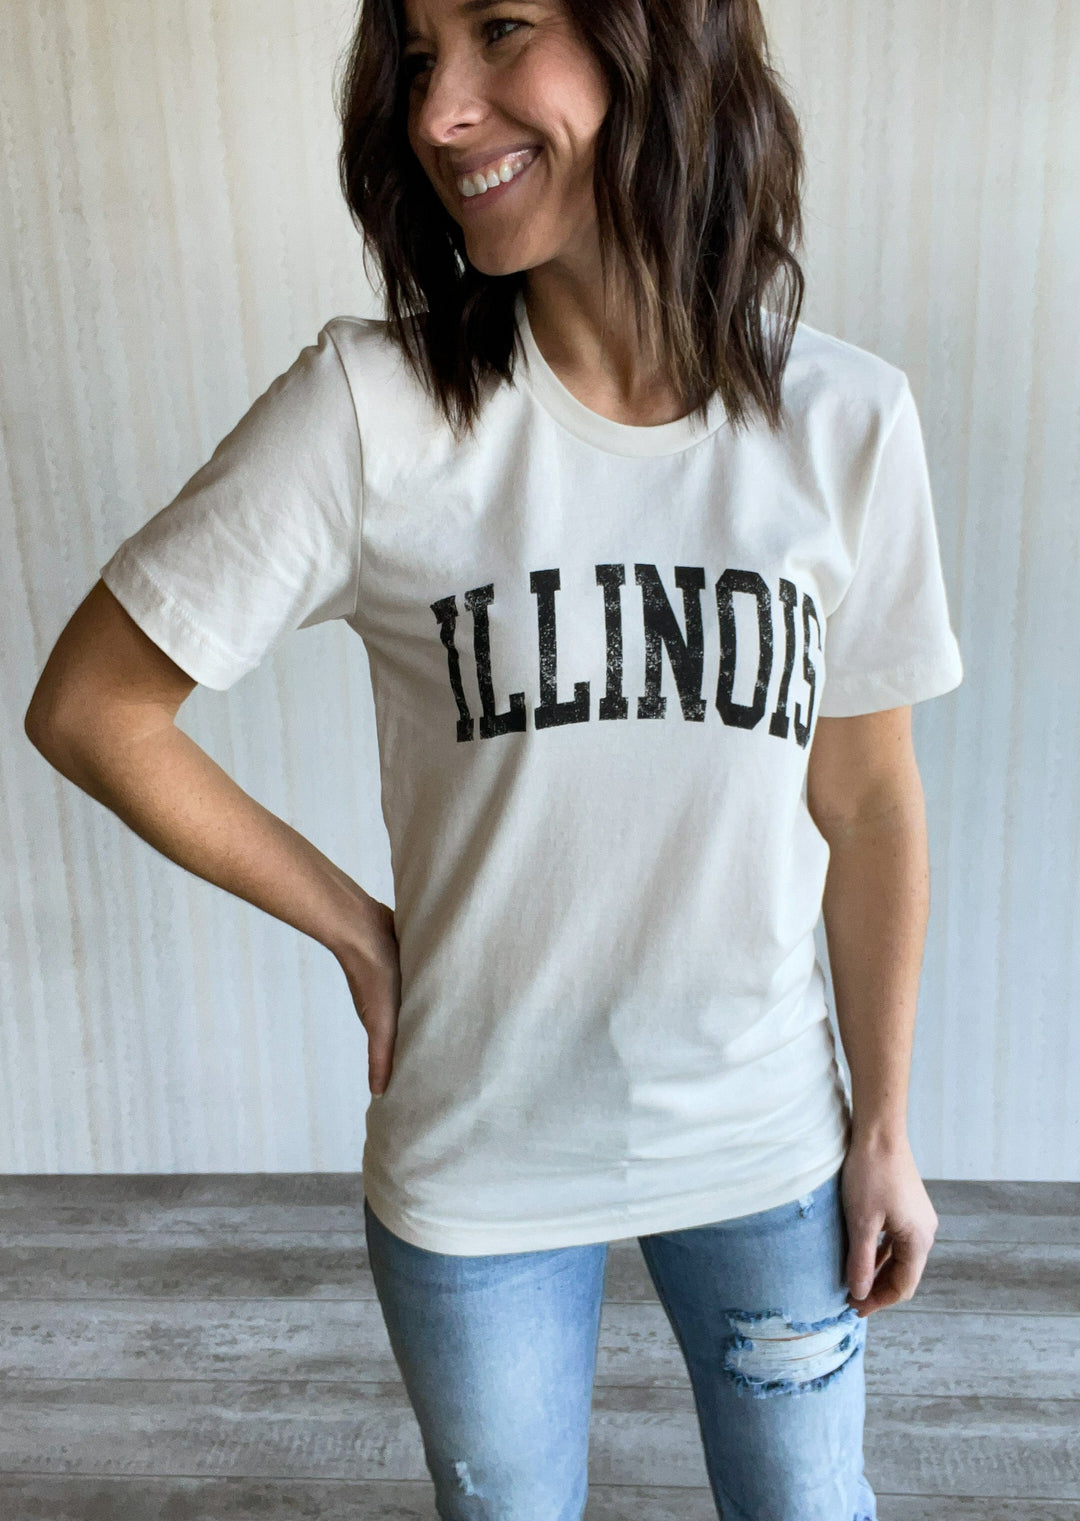 Women's Illinois White T-shirt